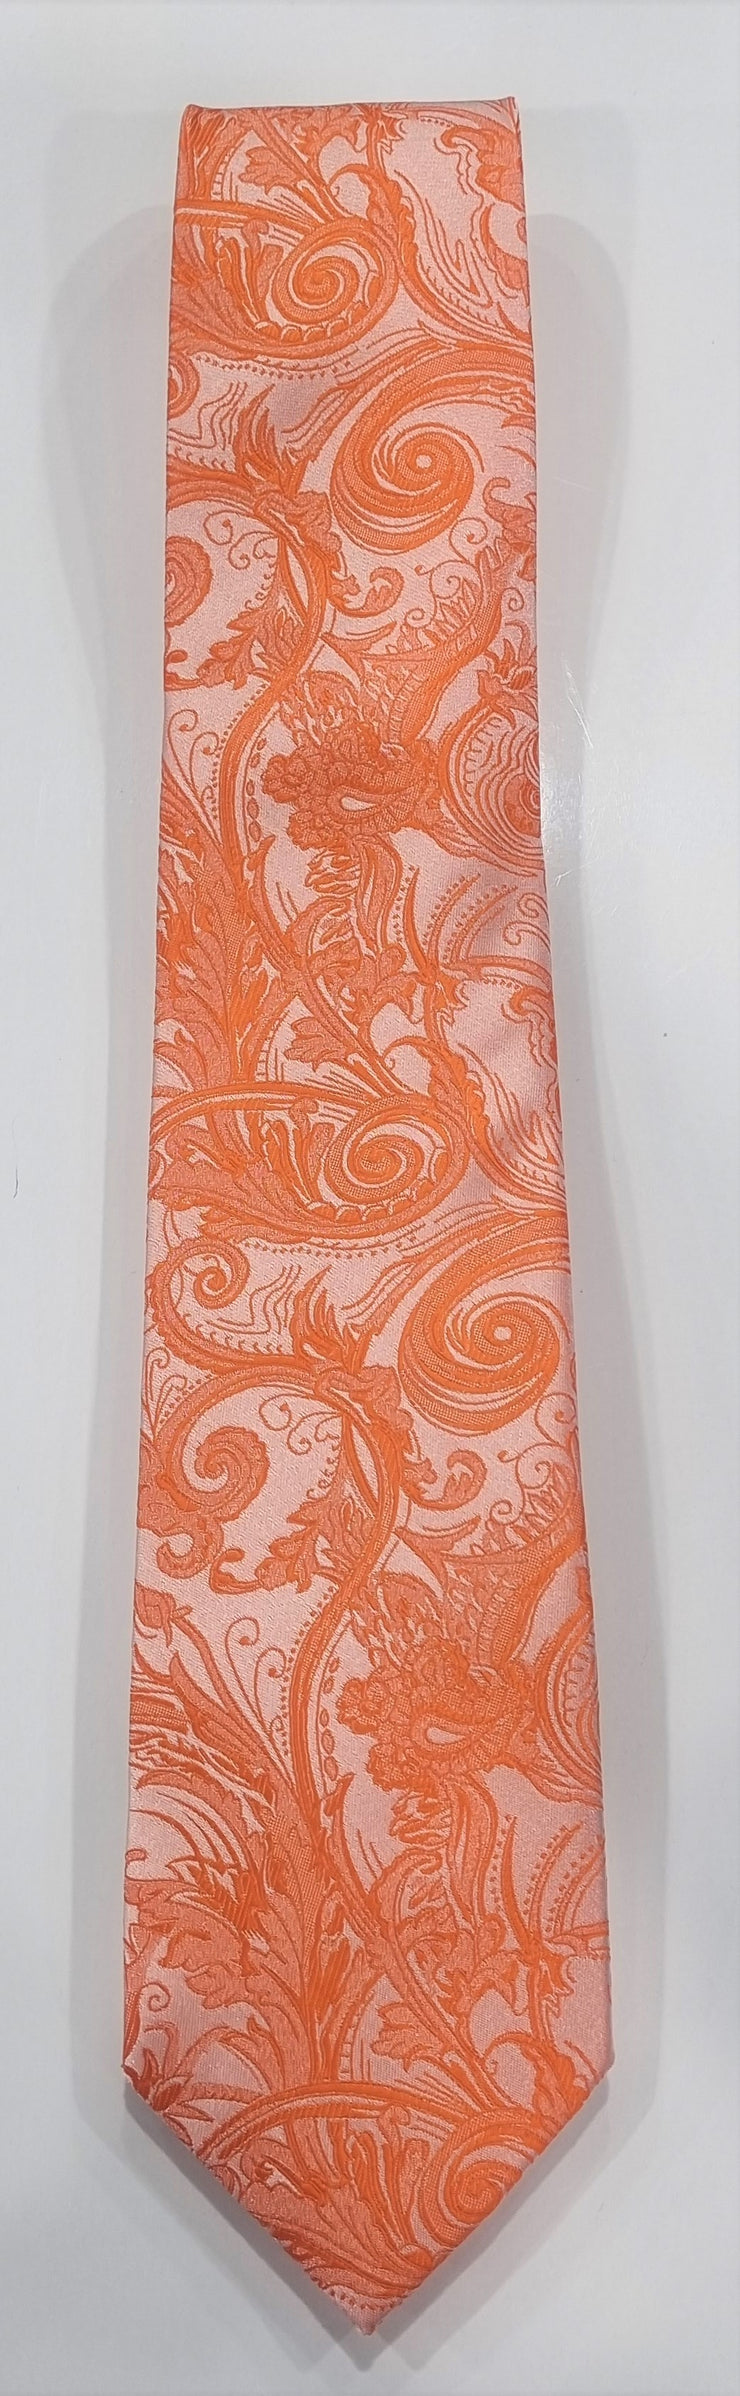 formal tie paisley pattern mandarin